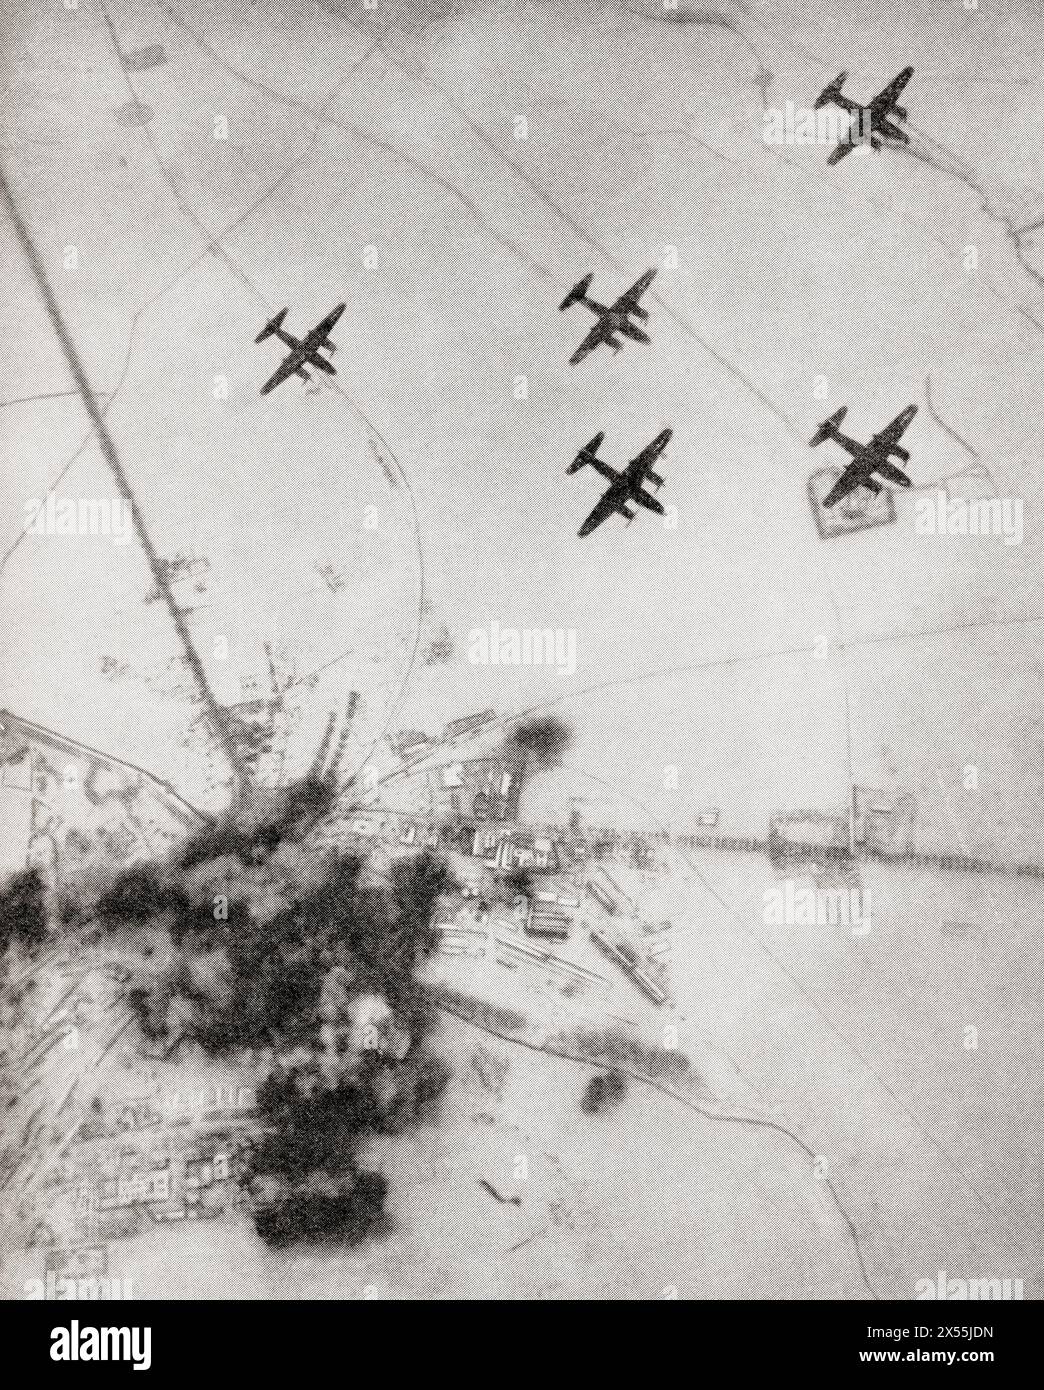 9. Luftwaffe 'Marauder' warf Bomben auf dem Rangierbahnhof in Emskirchen ab, November 1944. Aus dem Krieg in Bildern, sechstes Jahr. Stockfoto